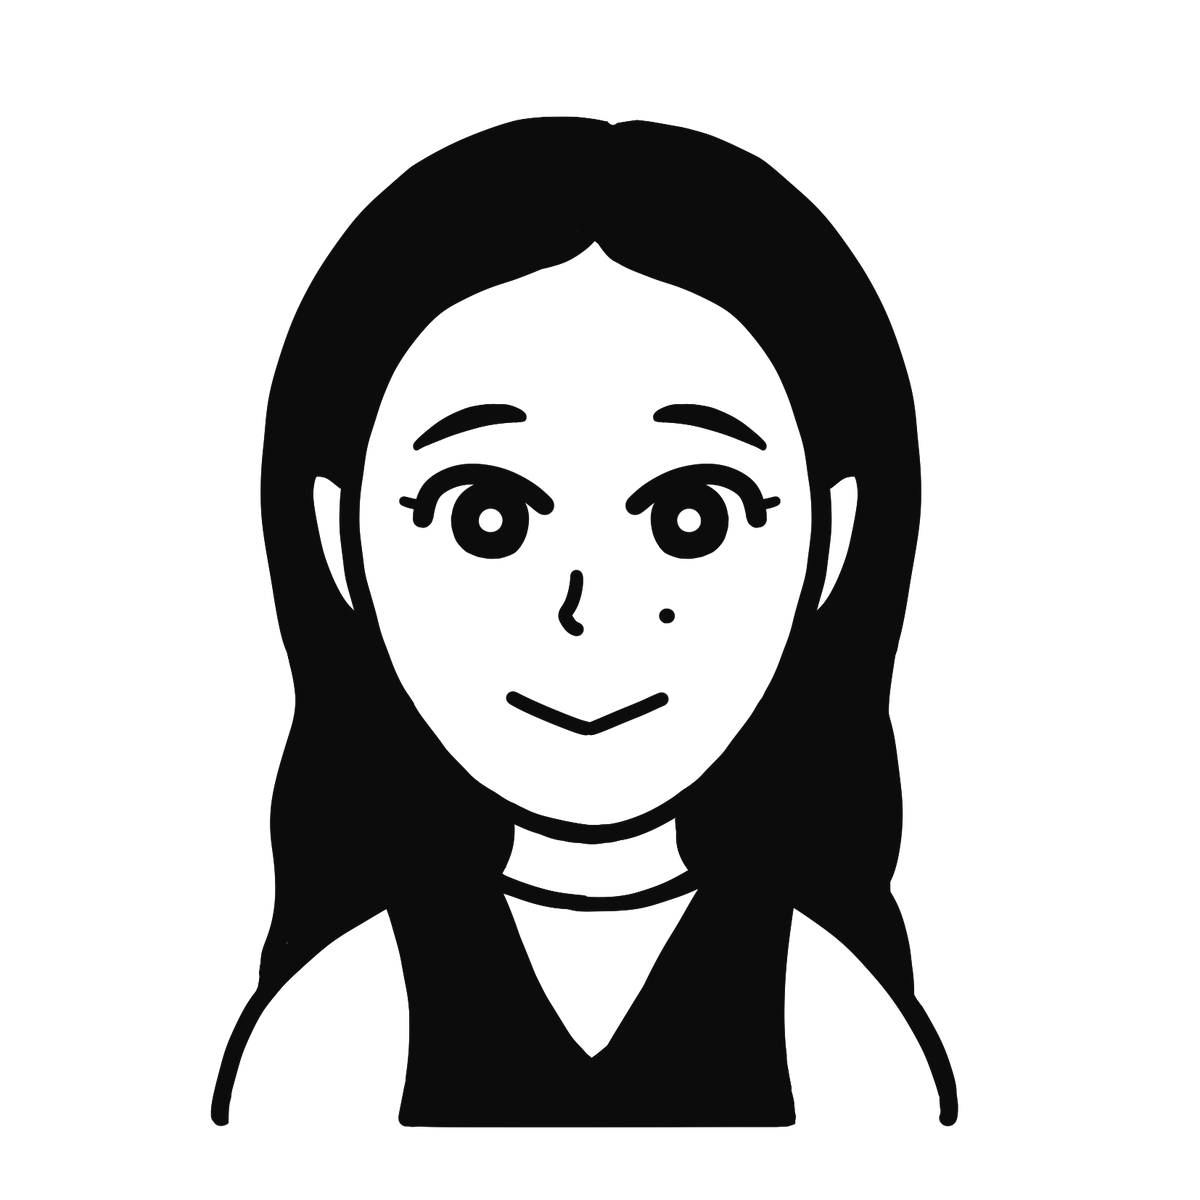 今日は蒼井優さんを描きました。
前回描いた山里さんもアップしておきます。

似顔絵を描いて欲しい方は、
お気軽にご相談ください。
#似顔絵  #イラスト依頼 